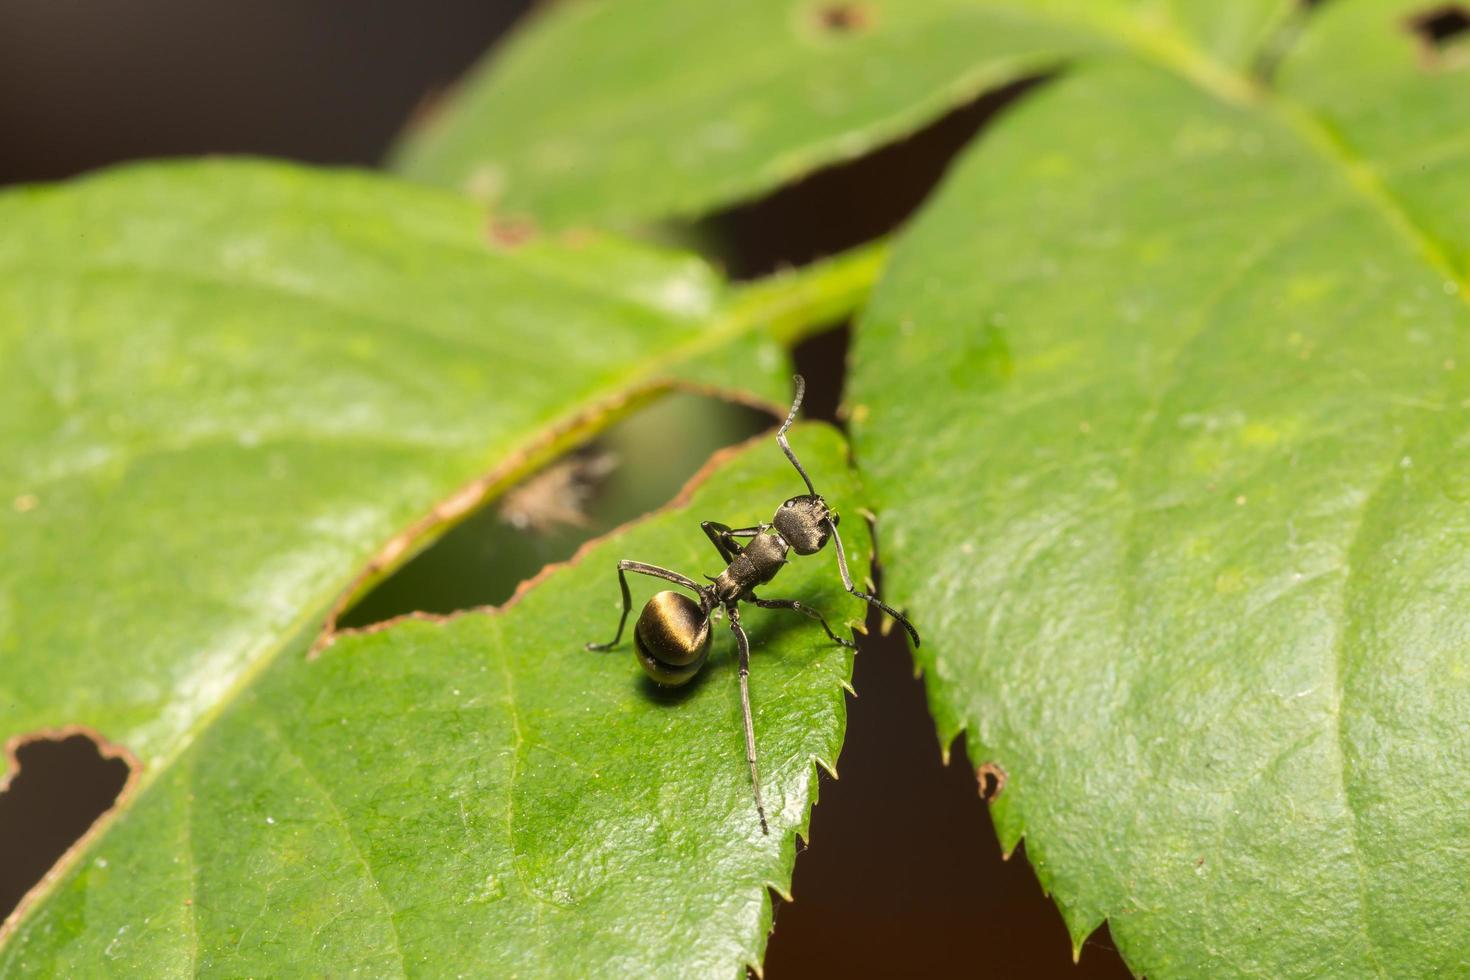 formiga preta em uma folha foto